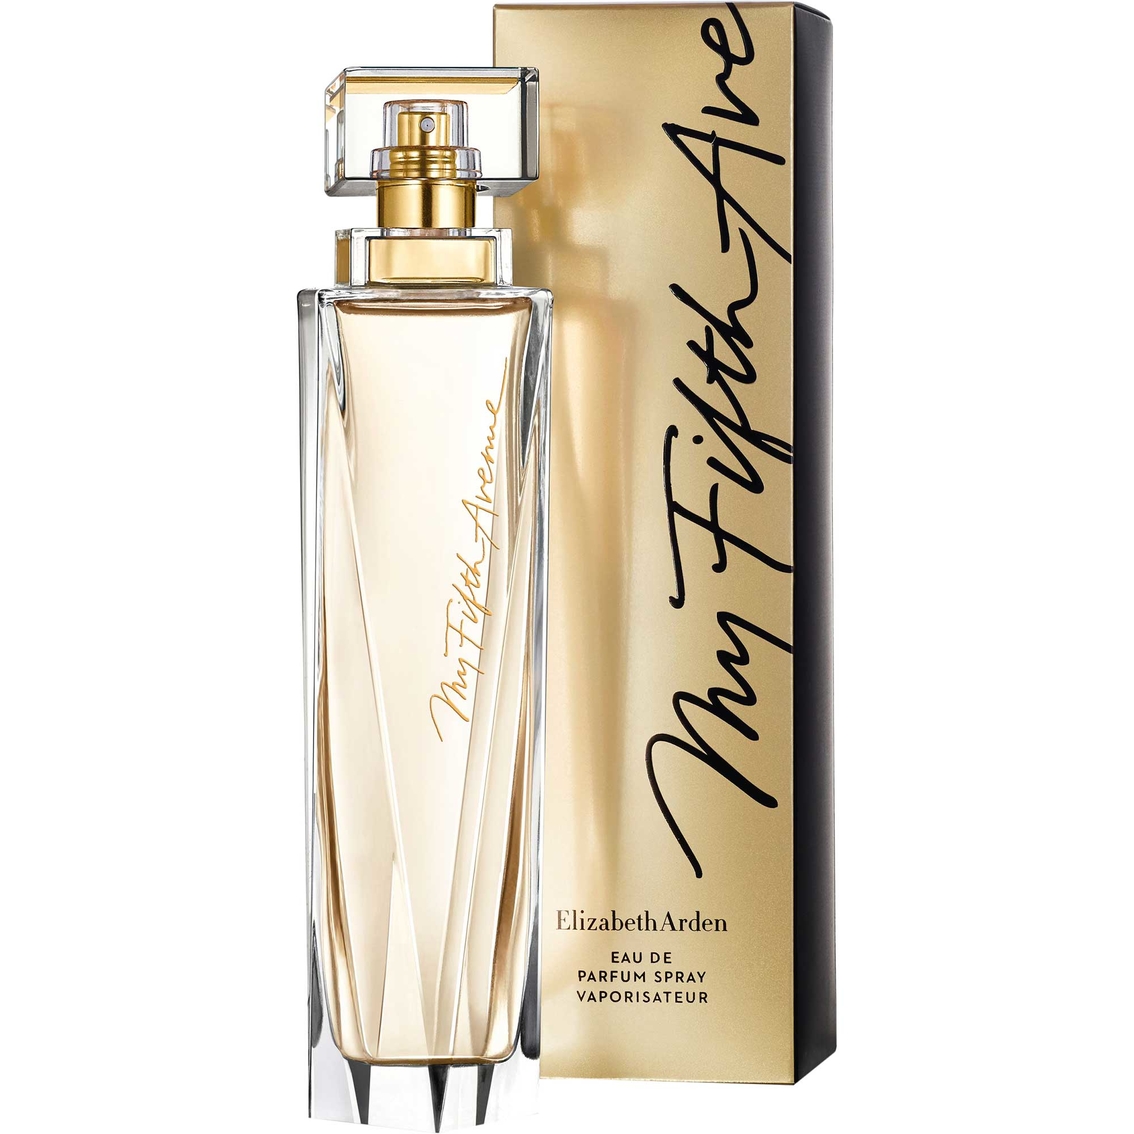 Elizabeth Arden My Fifth Avenue Eau de Parfum 3.4 oz. Spray - Image 2 of 2